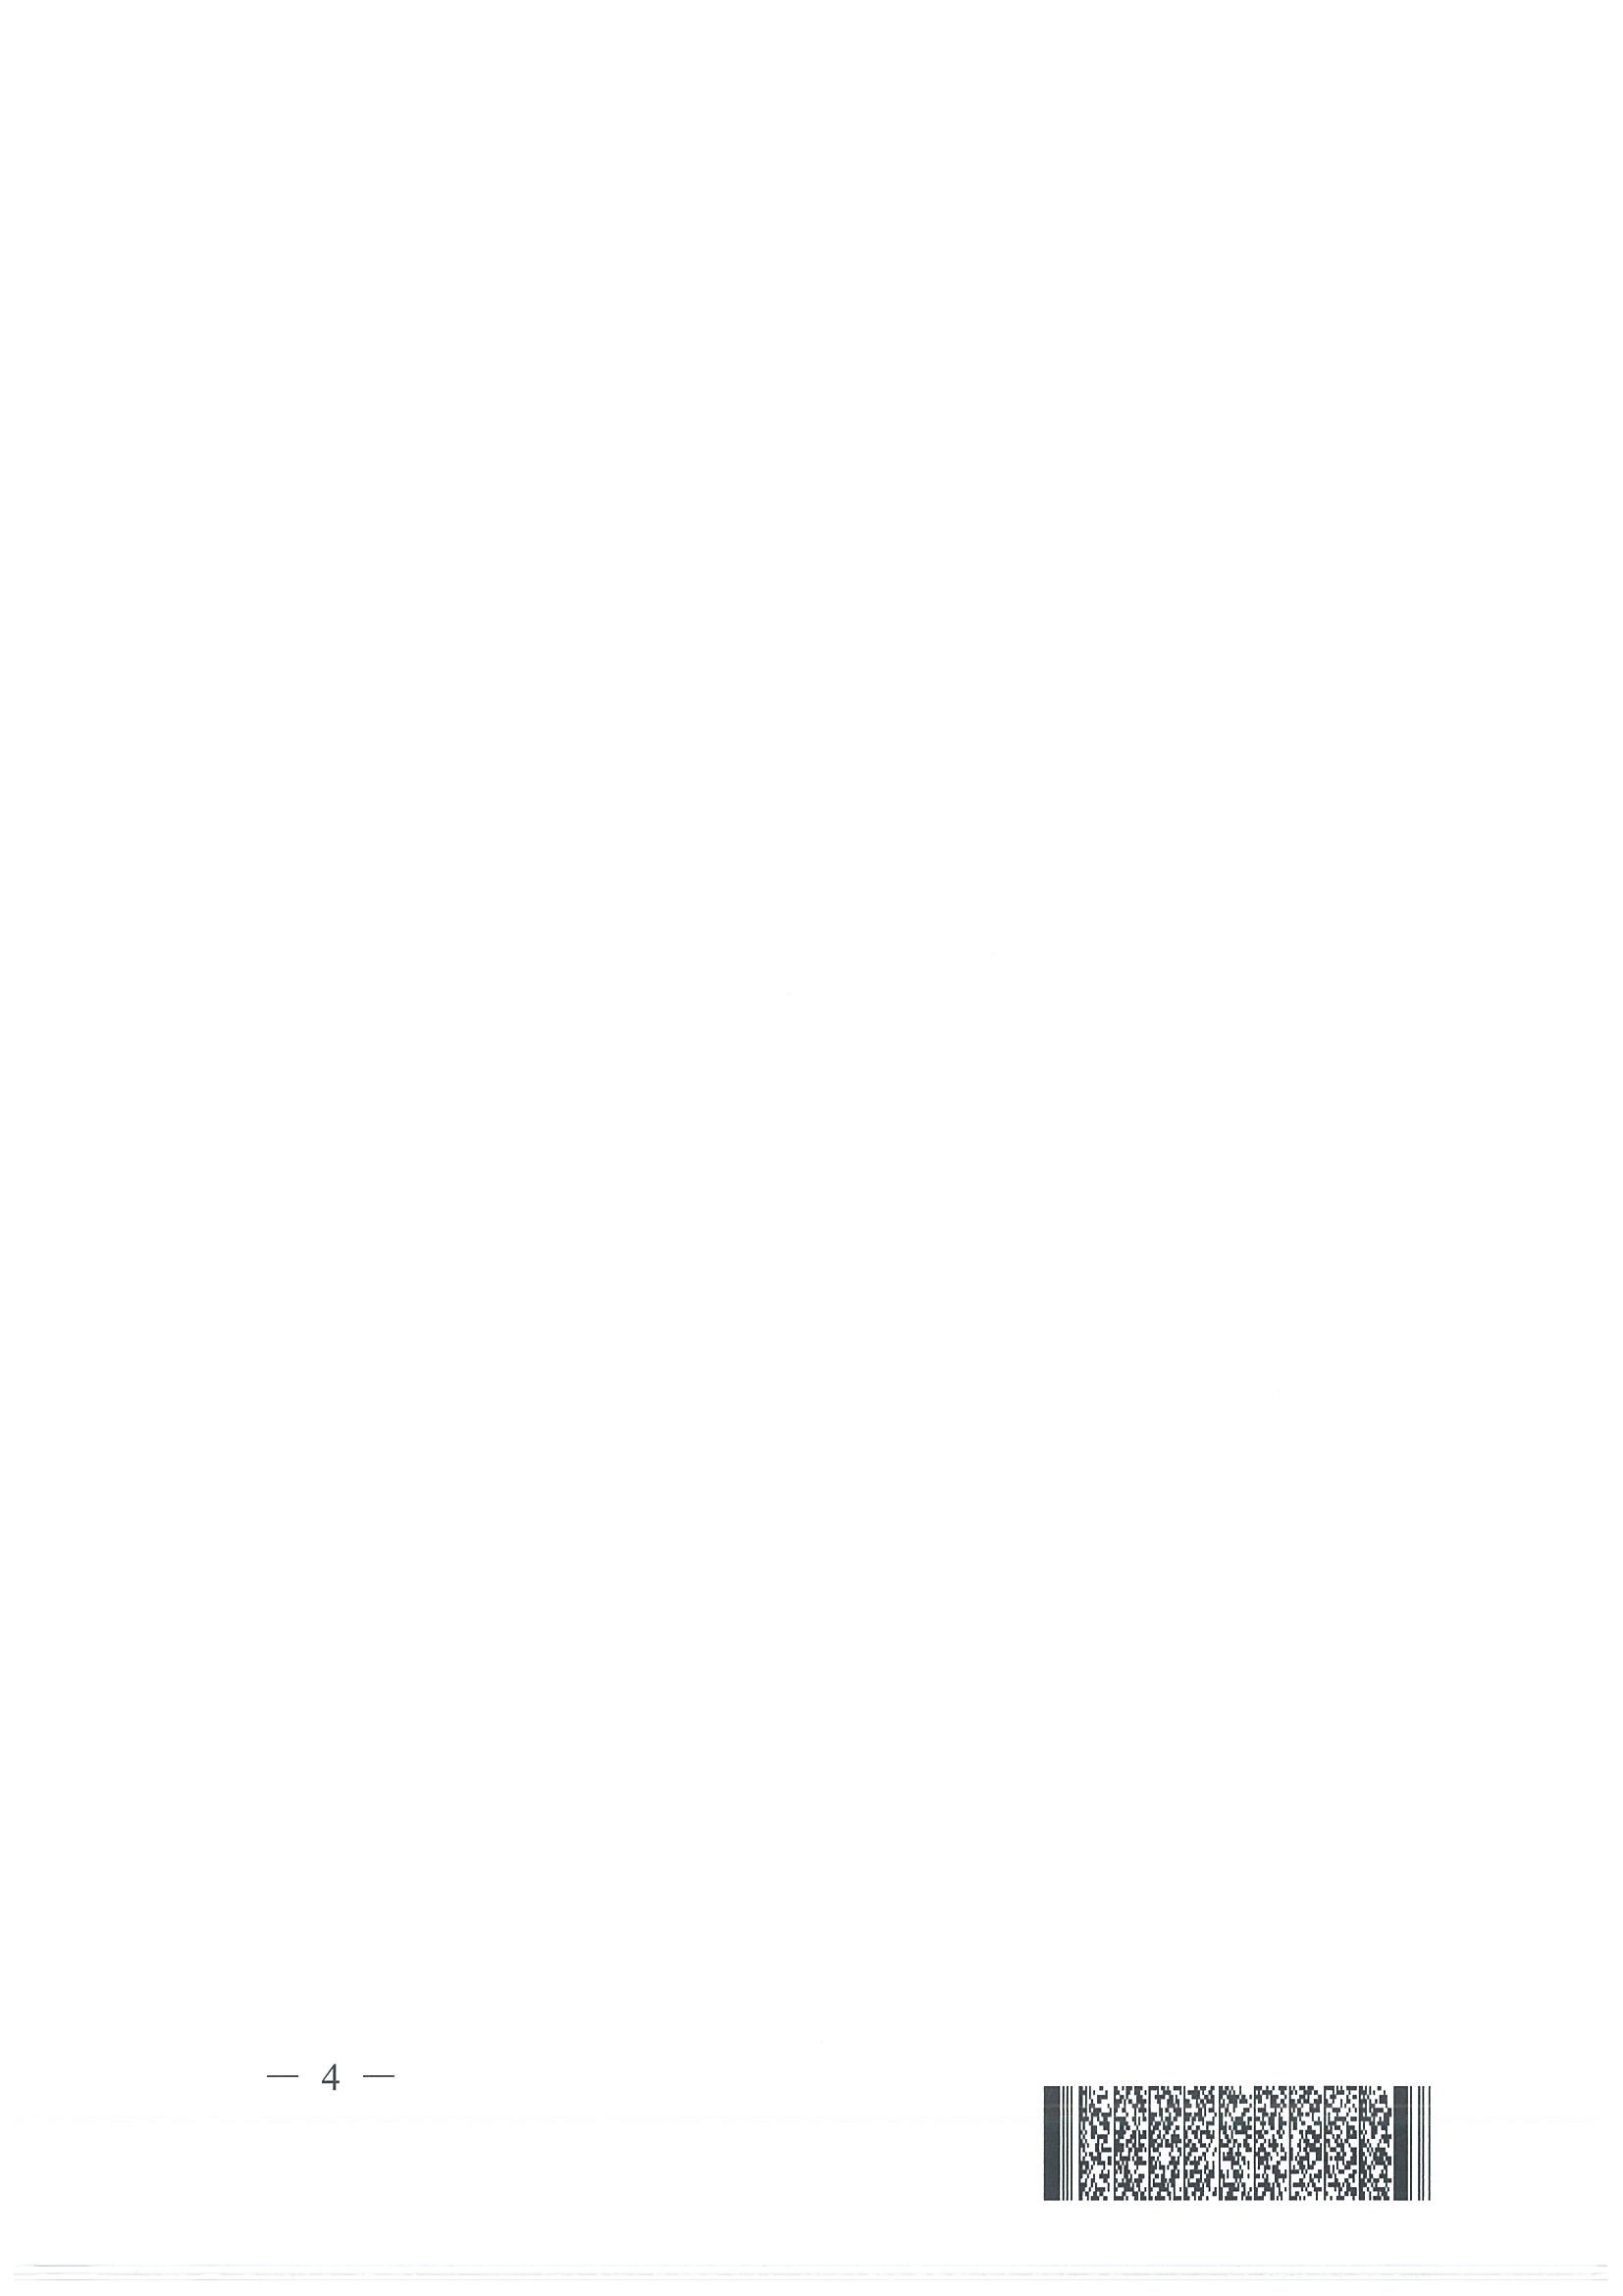 川监能安全函〔2020)187号关于开展四川电力行业防灾减灾救灾主题征文活动的通知(1)_页面_4.jpg